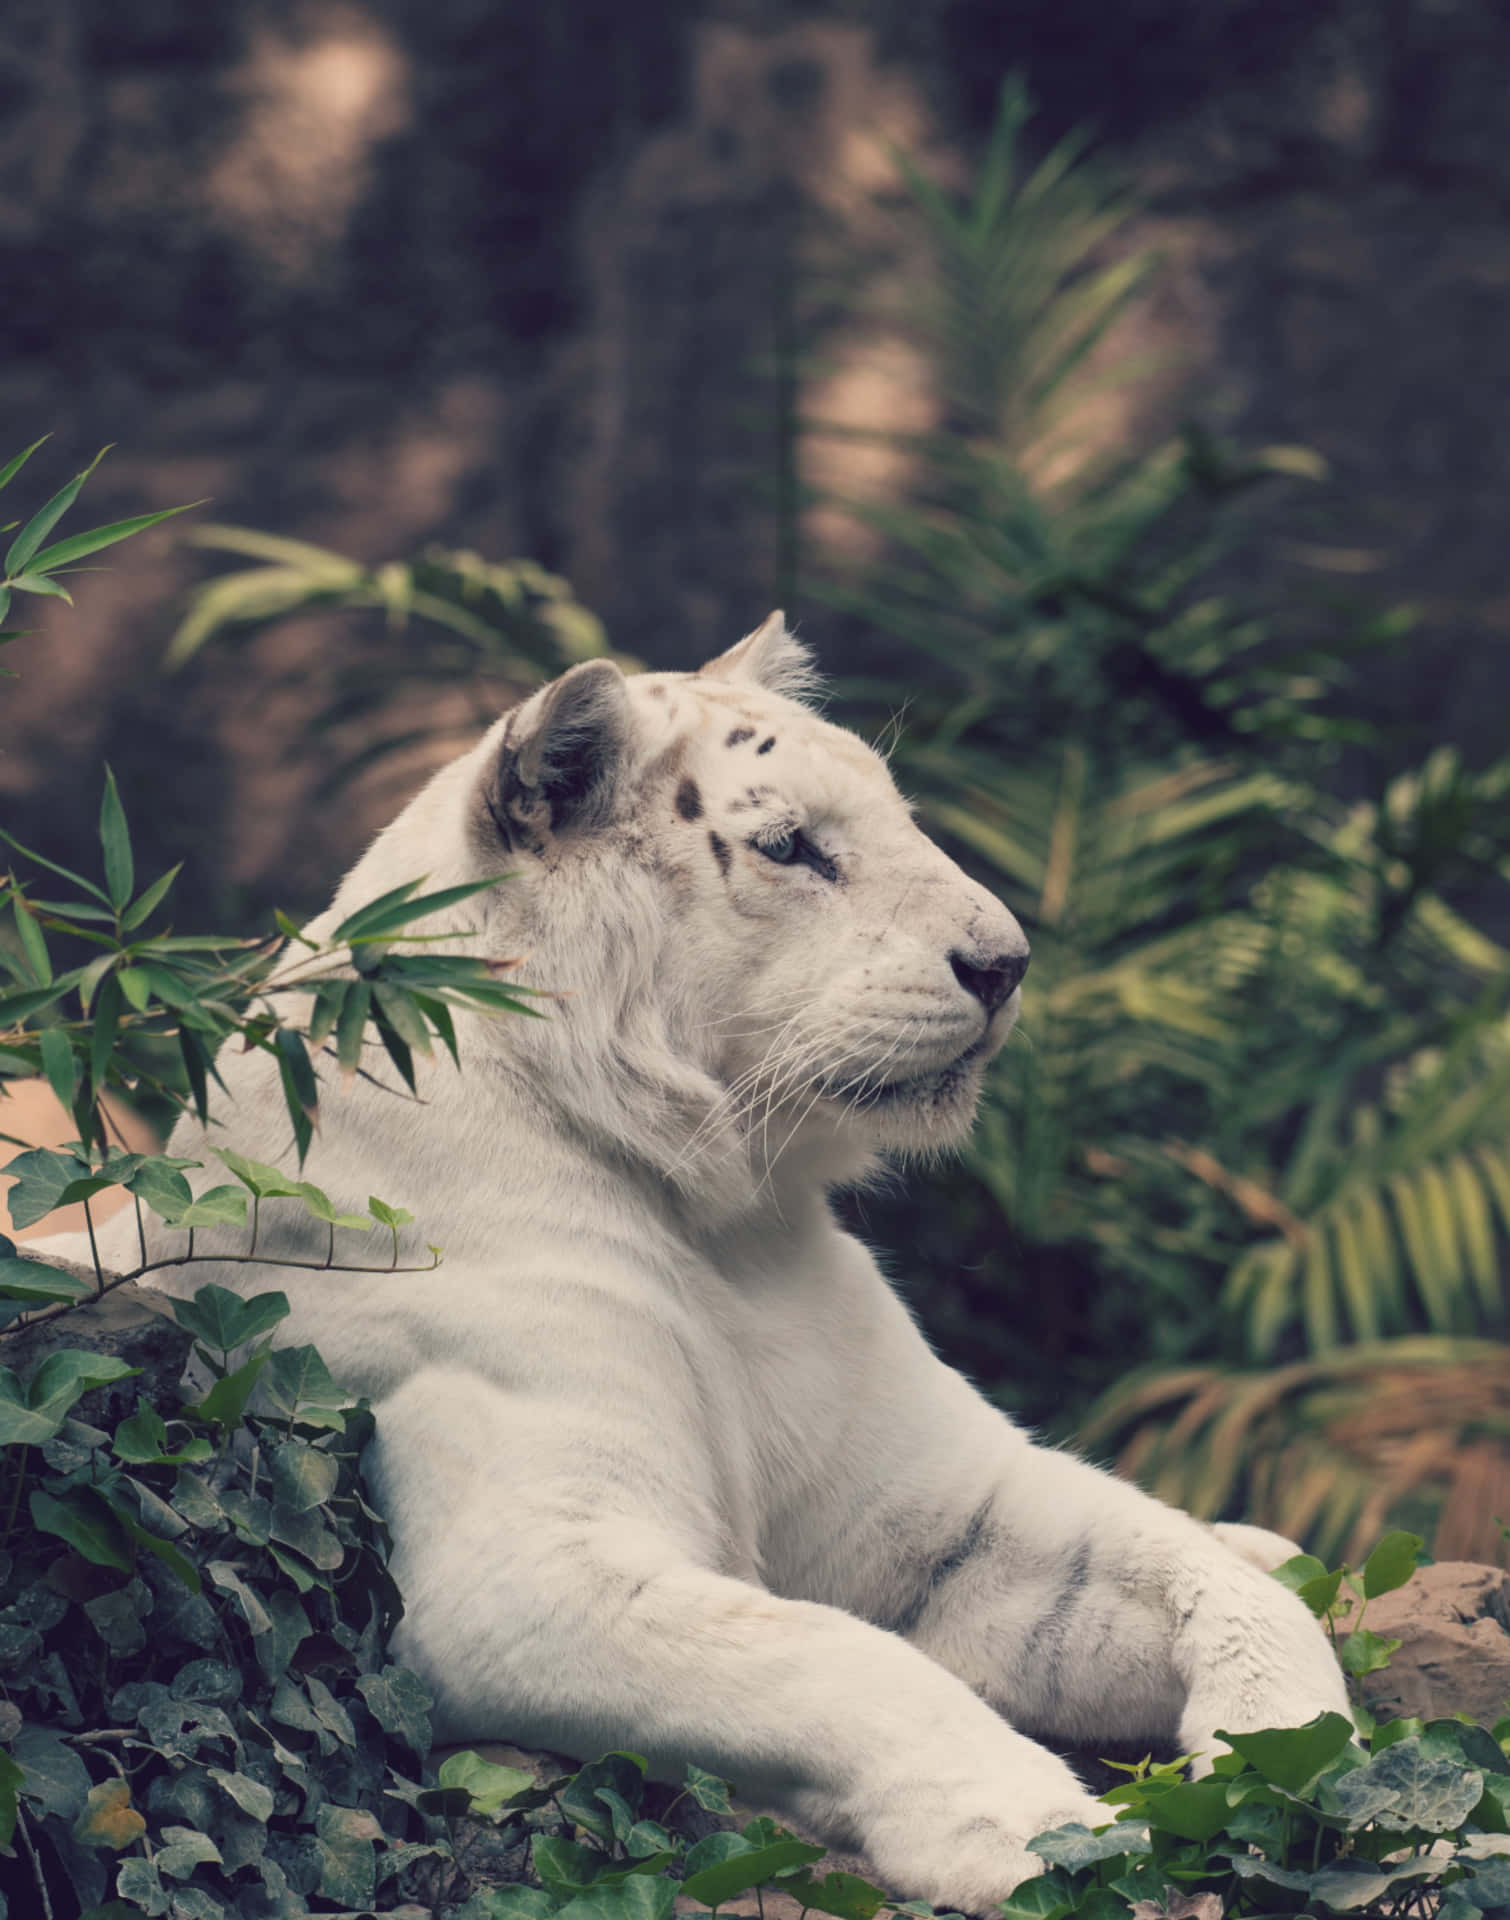 Majestic White Tiger